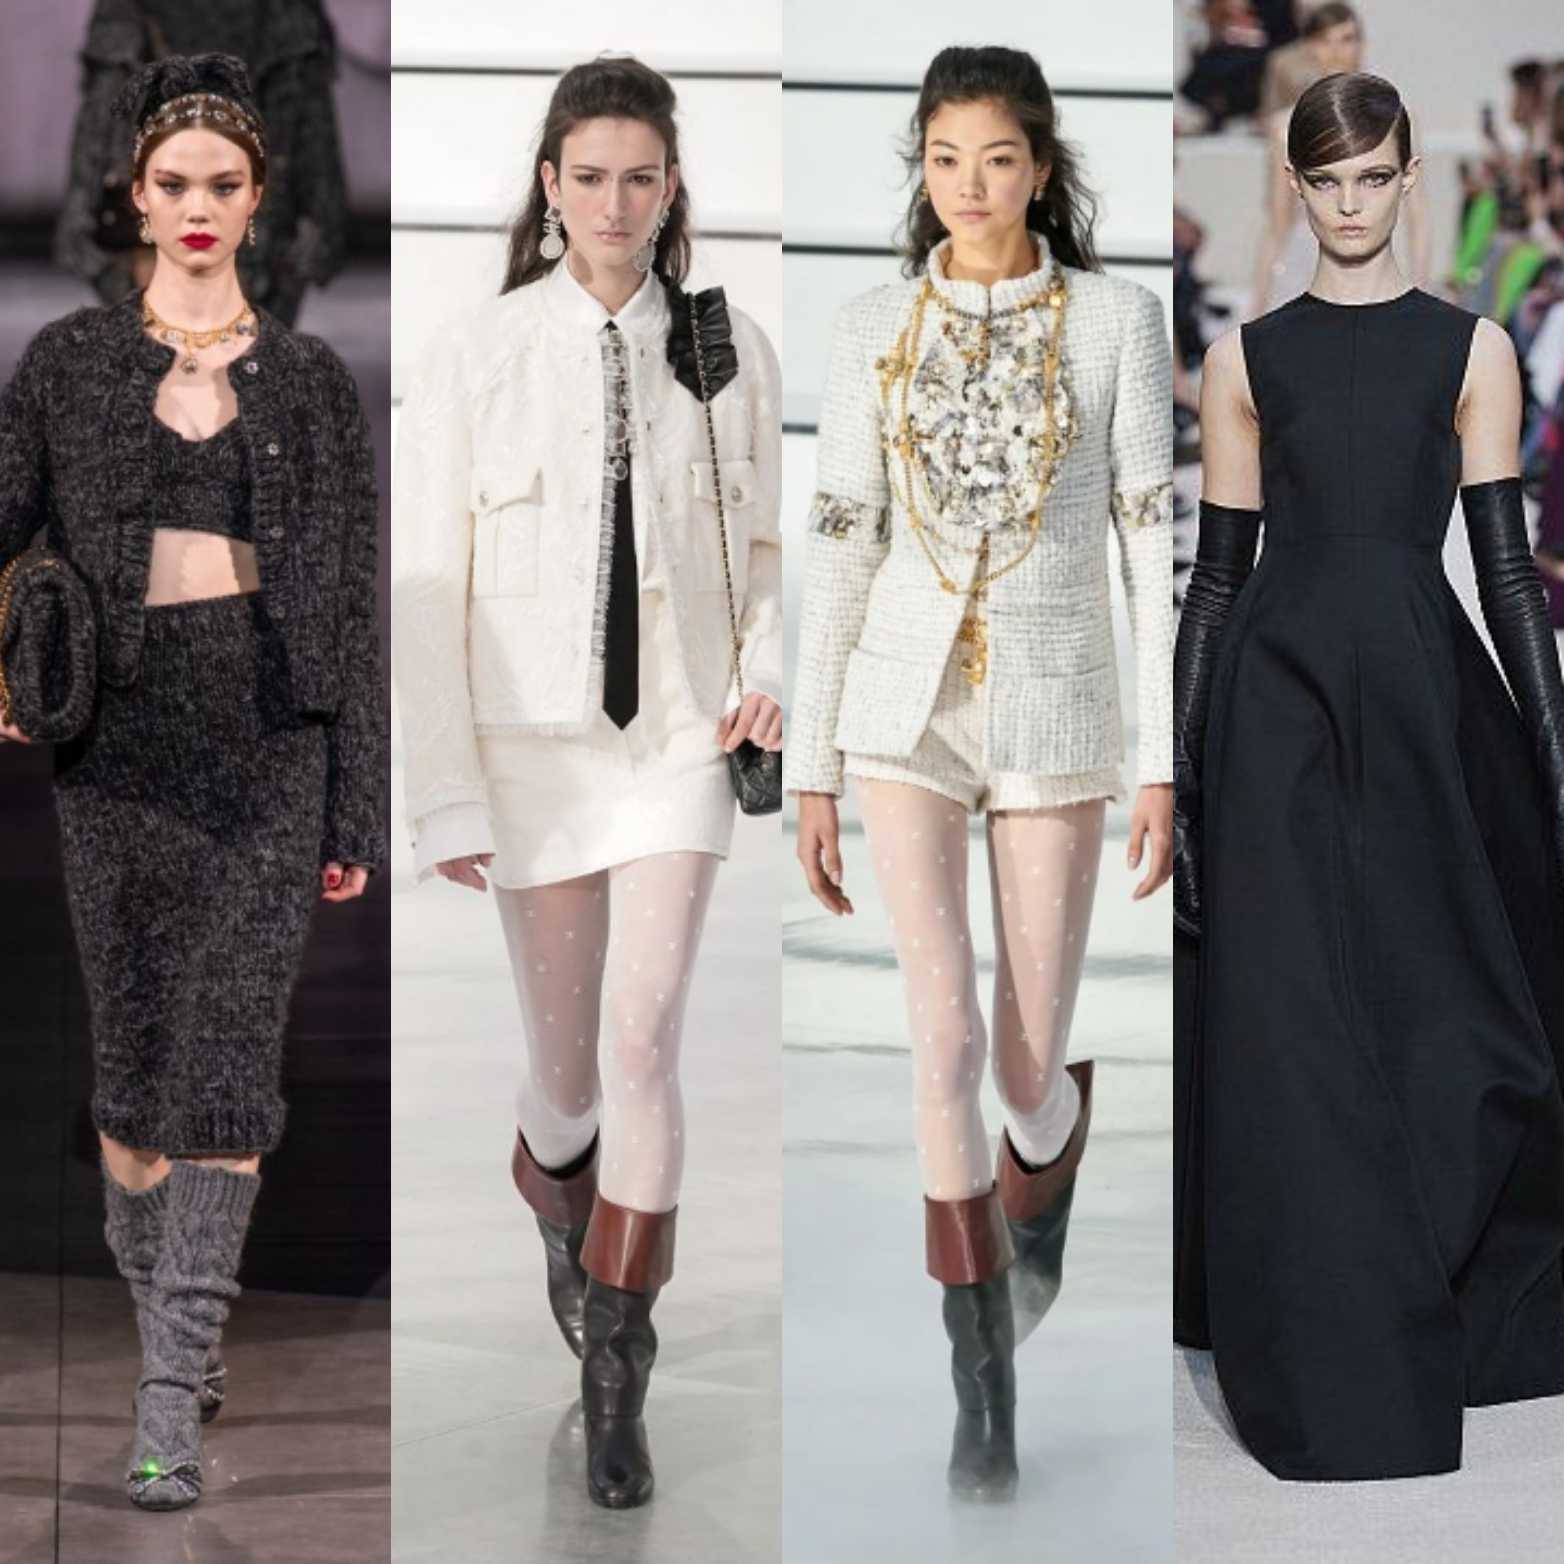 Стильные юбки 2019-2020 модные тенденции, фасоны, новинки + фото